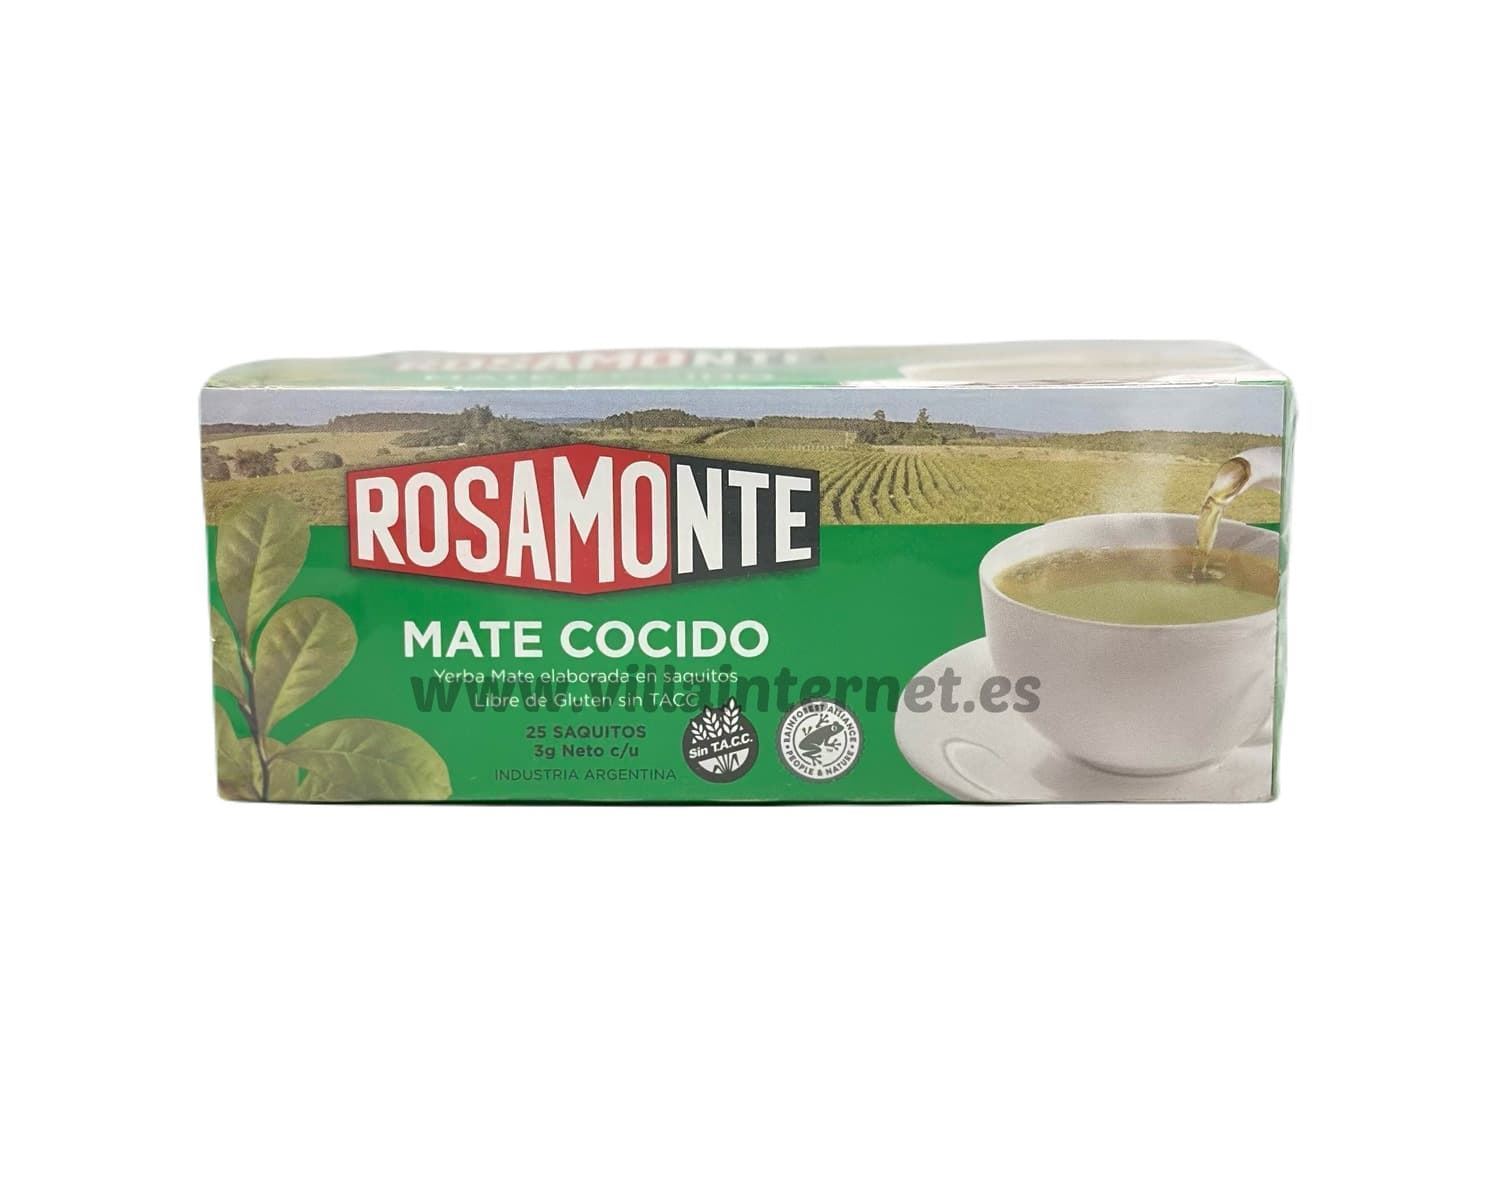 Mate cocido libre de gluten Rosamonte 25saquitos - Imagen 1